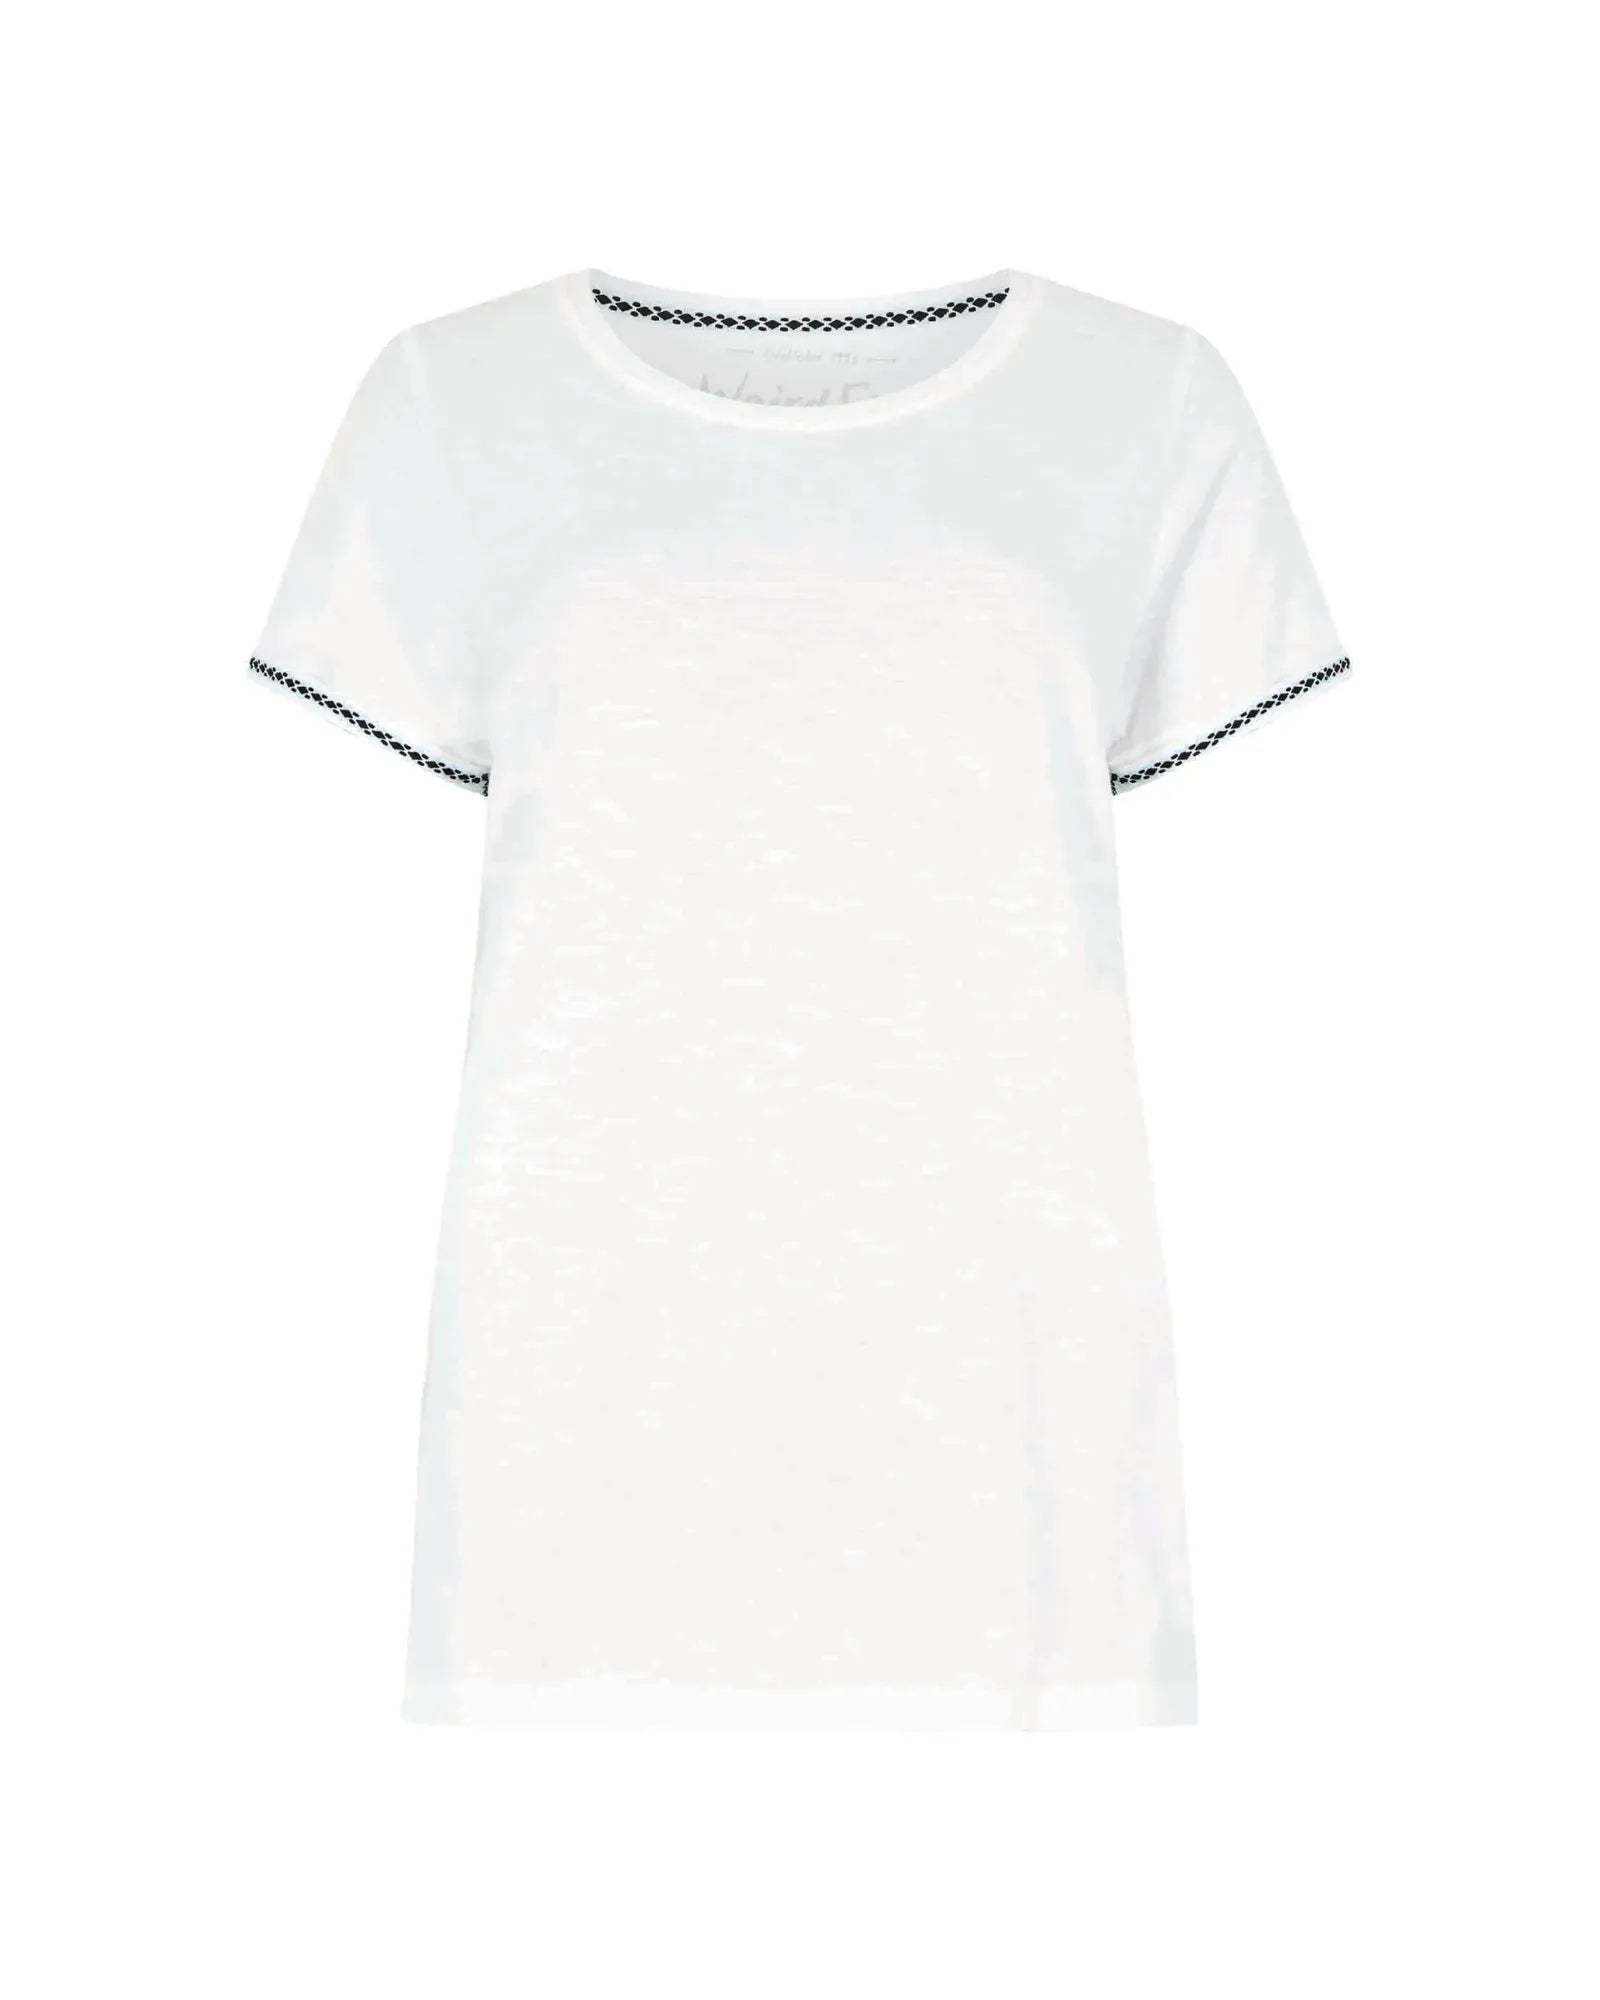 Teya White T-Shirt